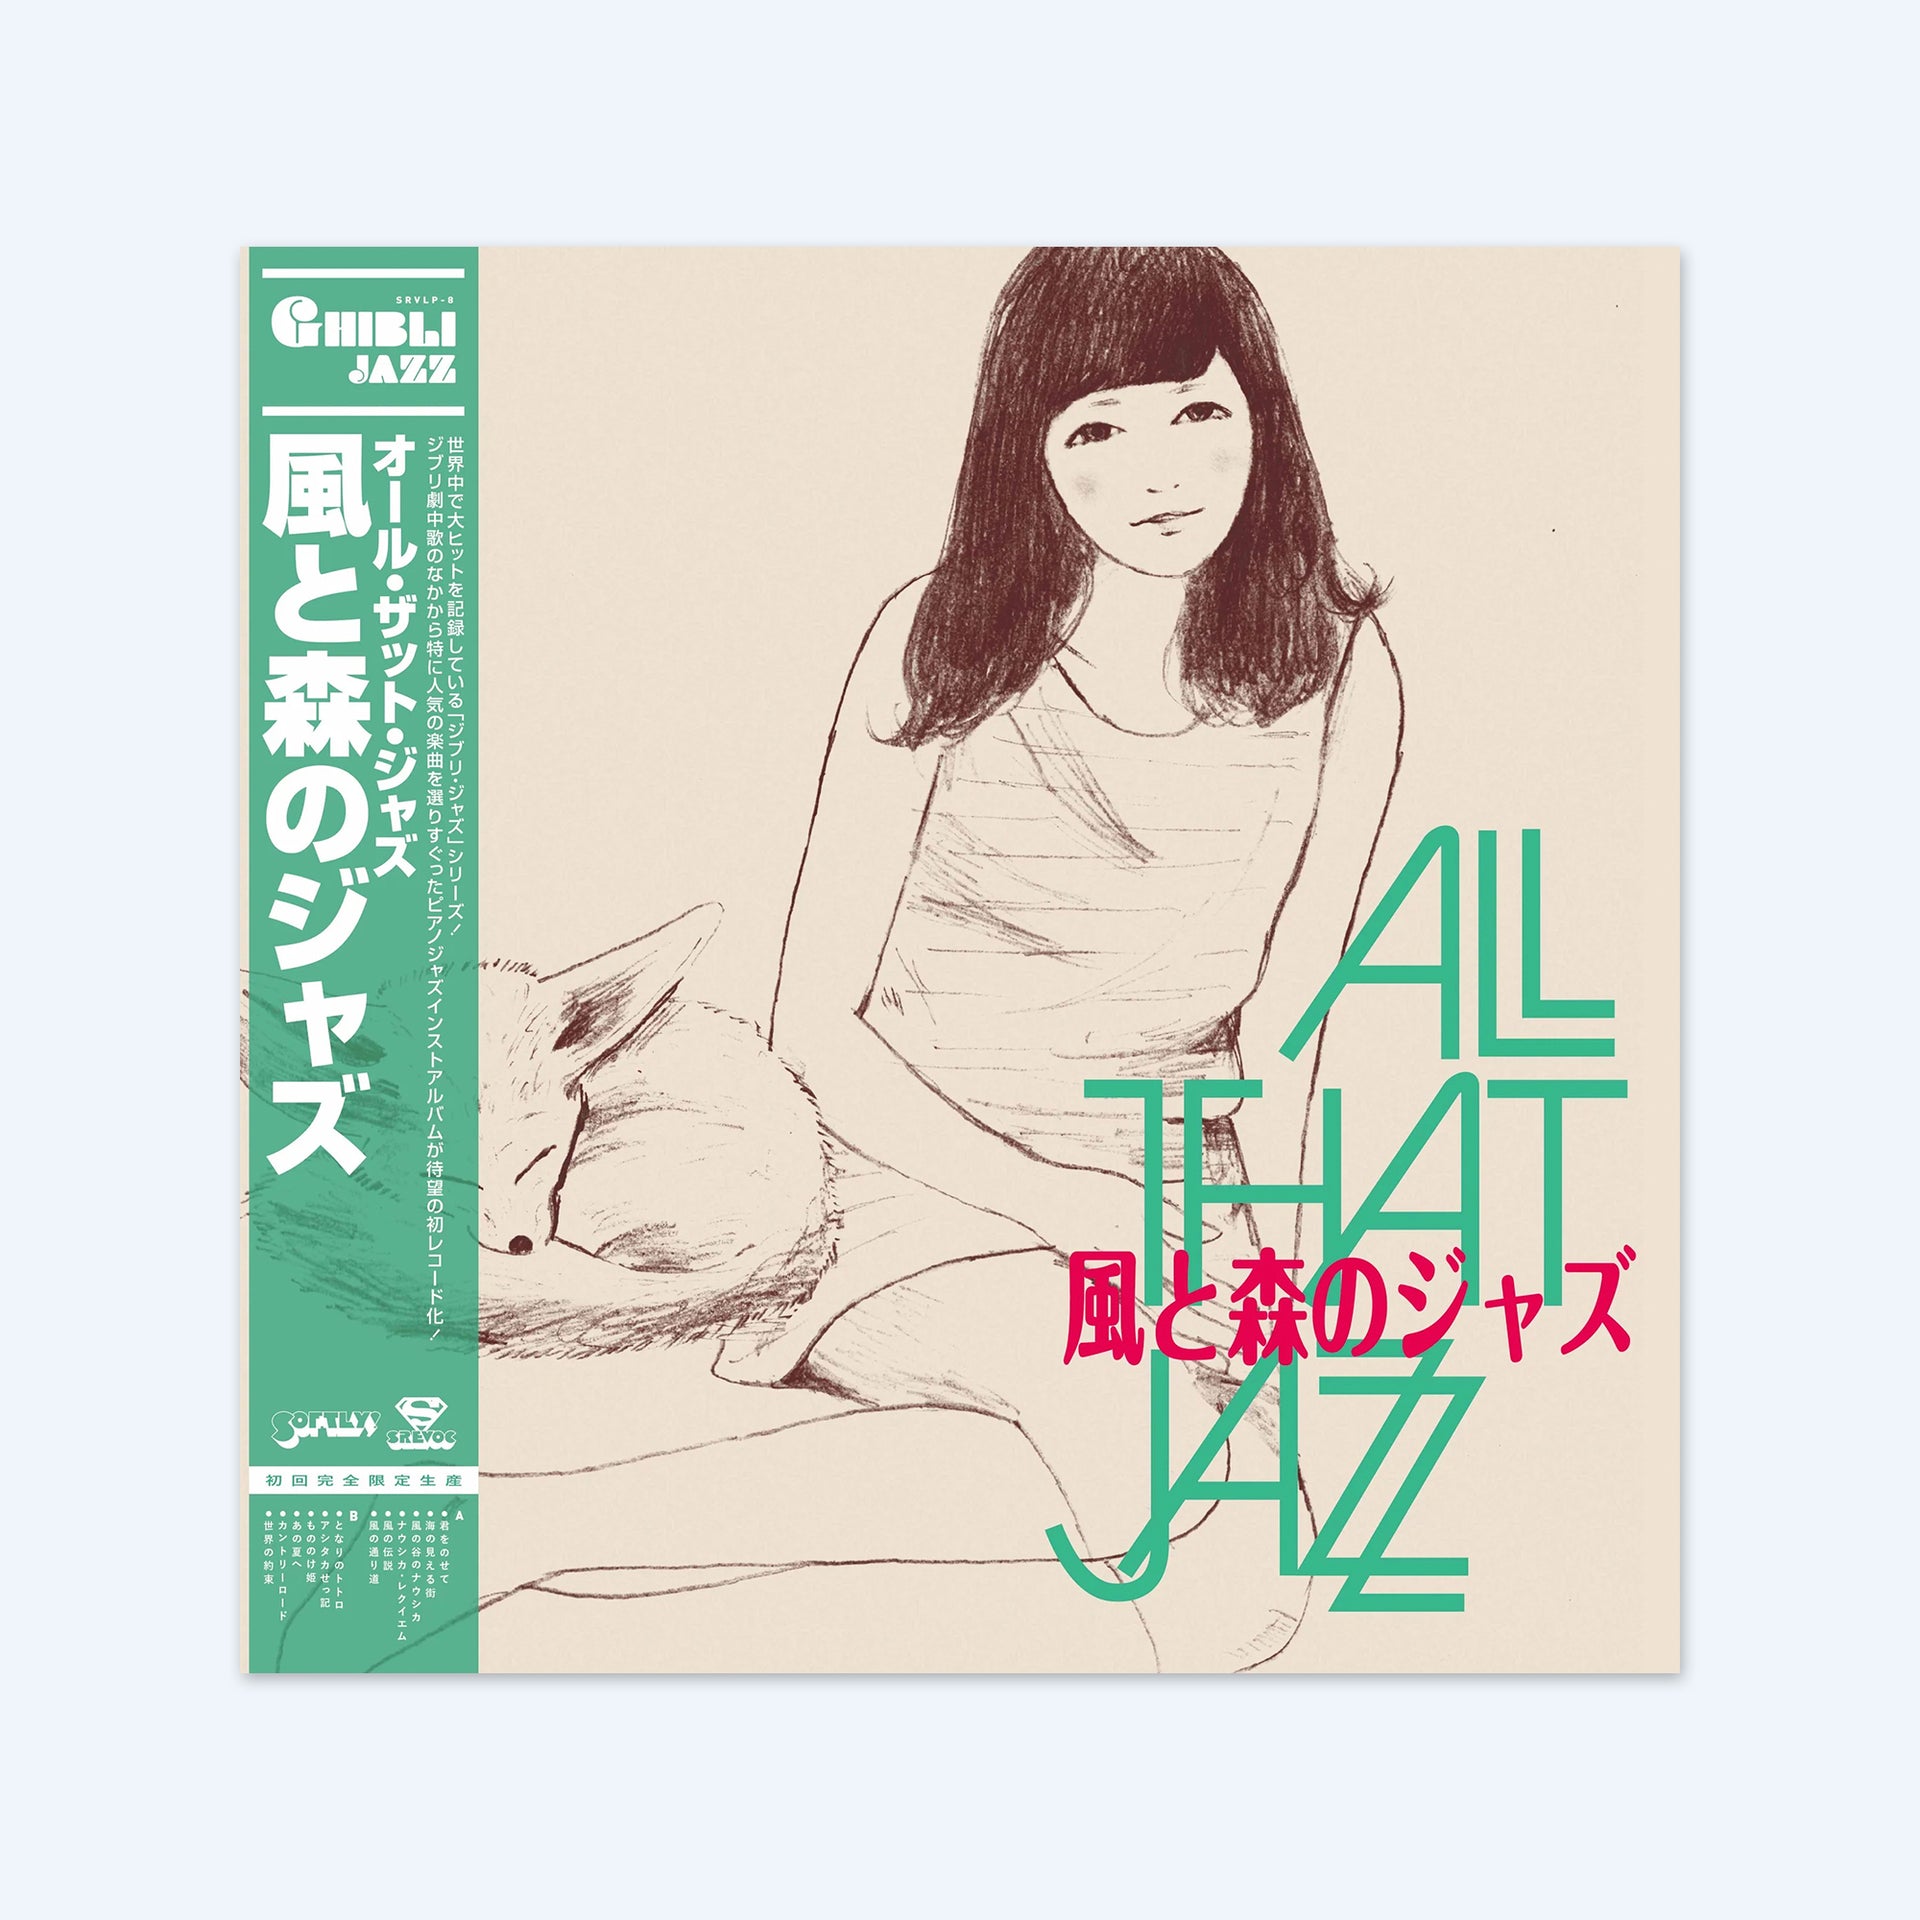 Kaze to Mori no Jazz (Ghibli Jazz 3) by All That Jazz